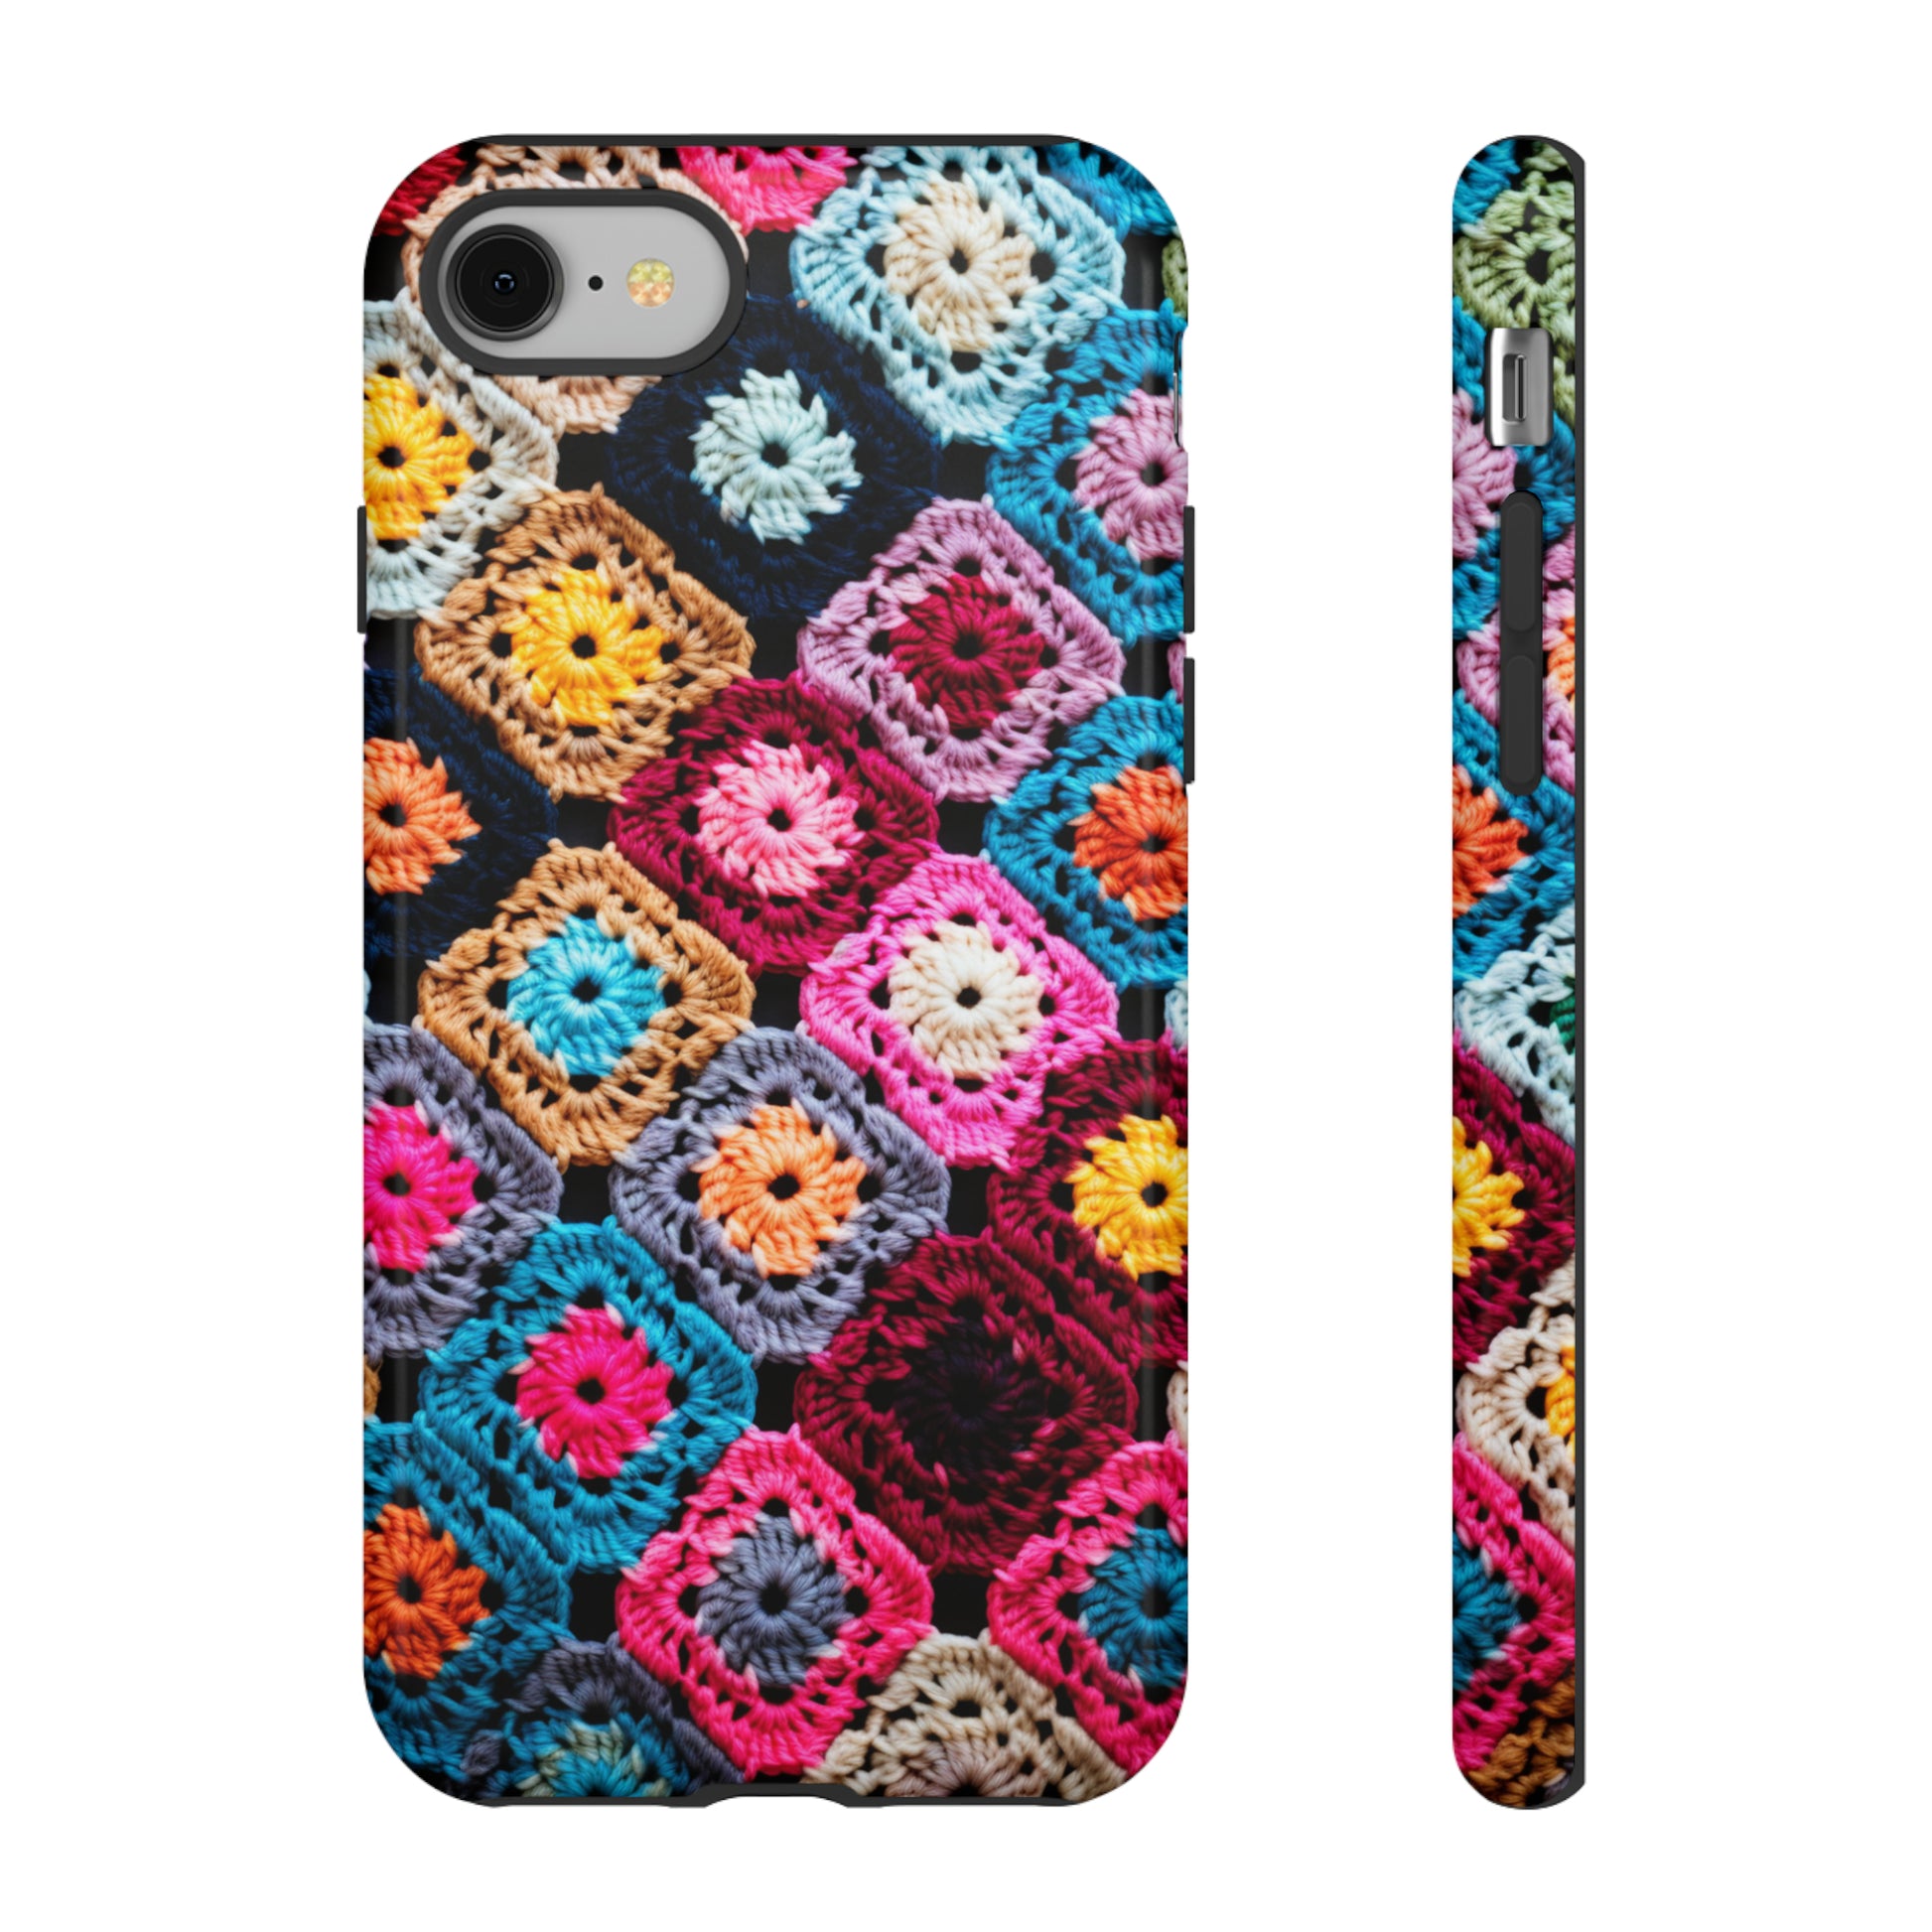 Pixel phone case with cozy retro crochet design